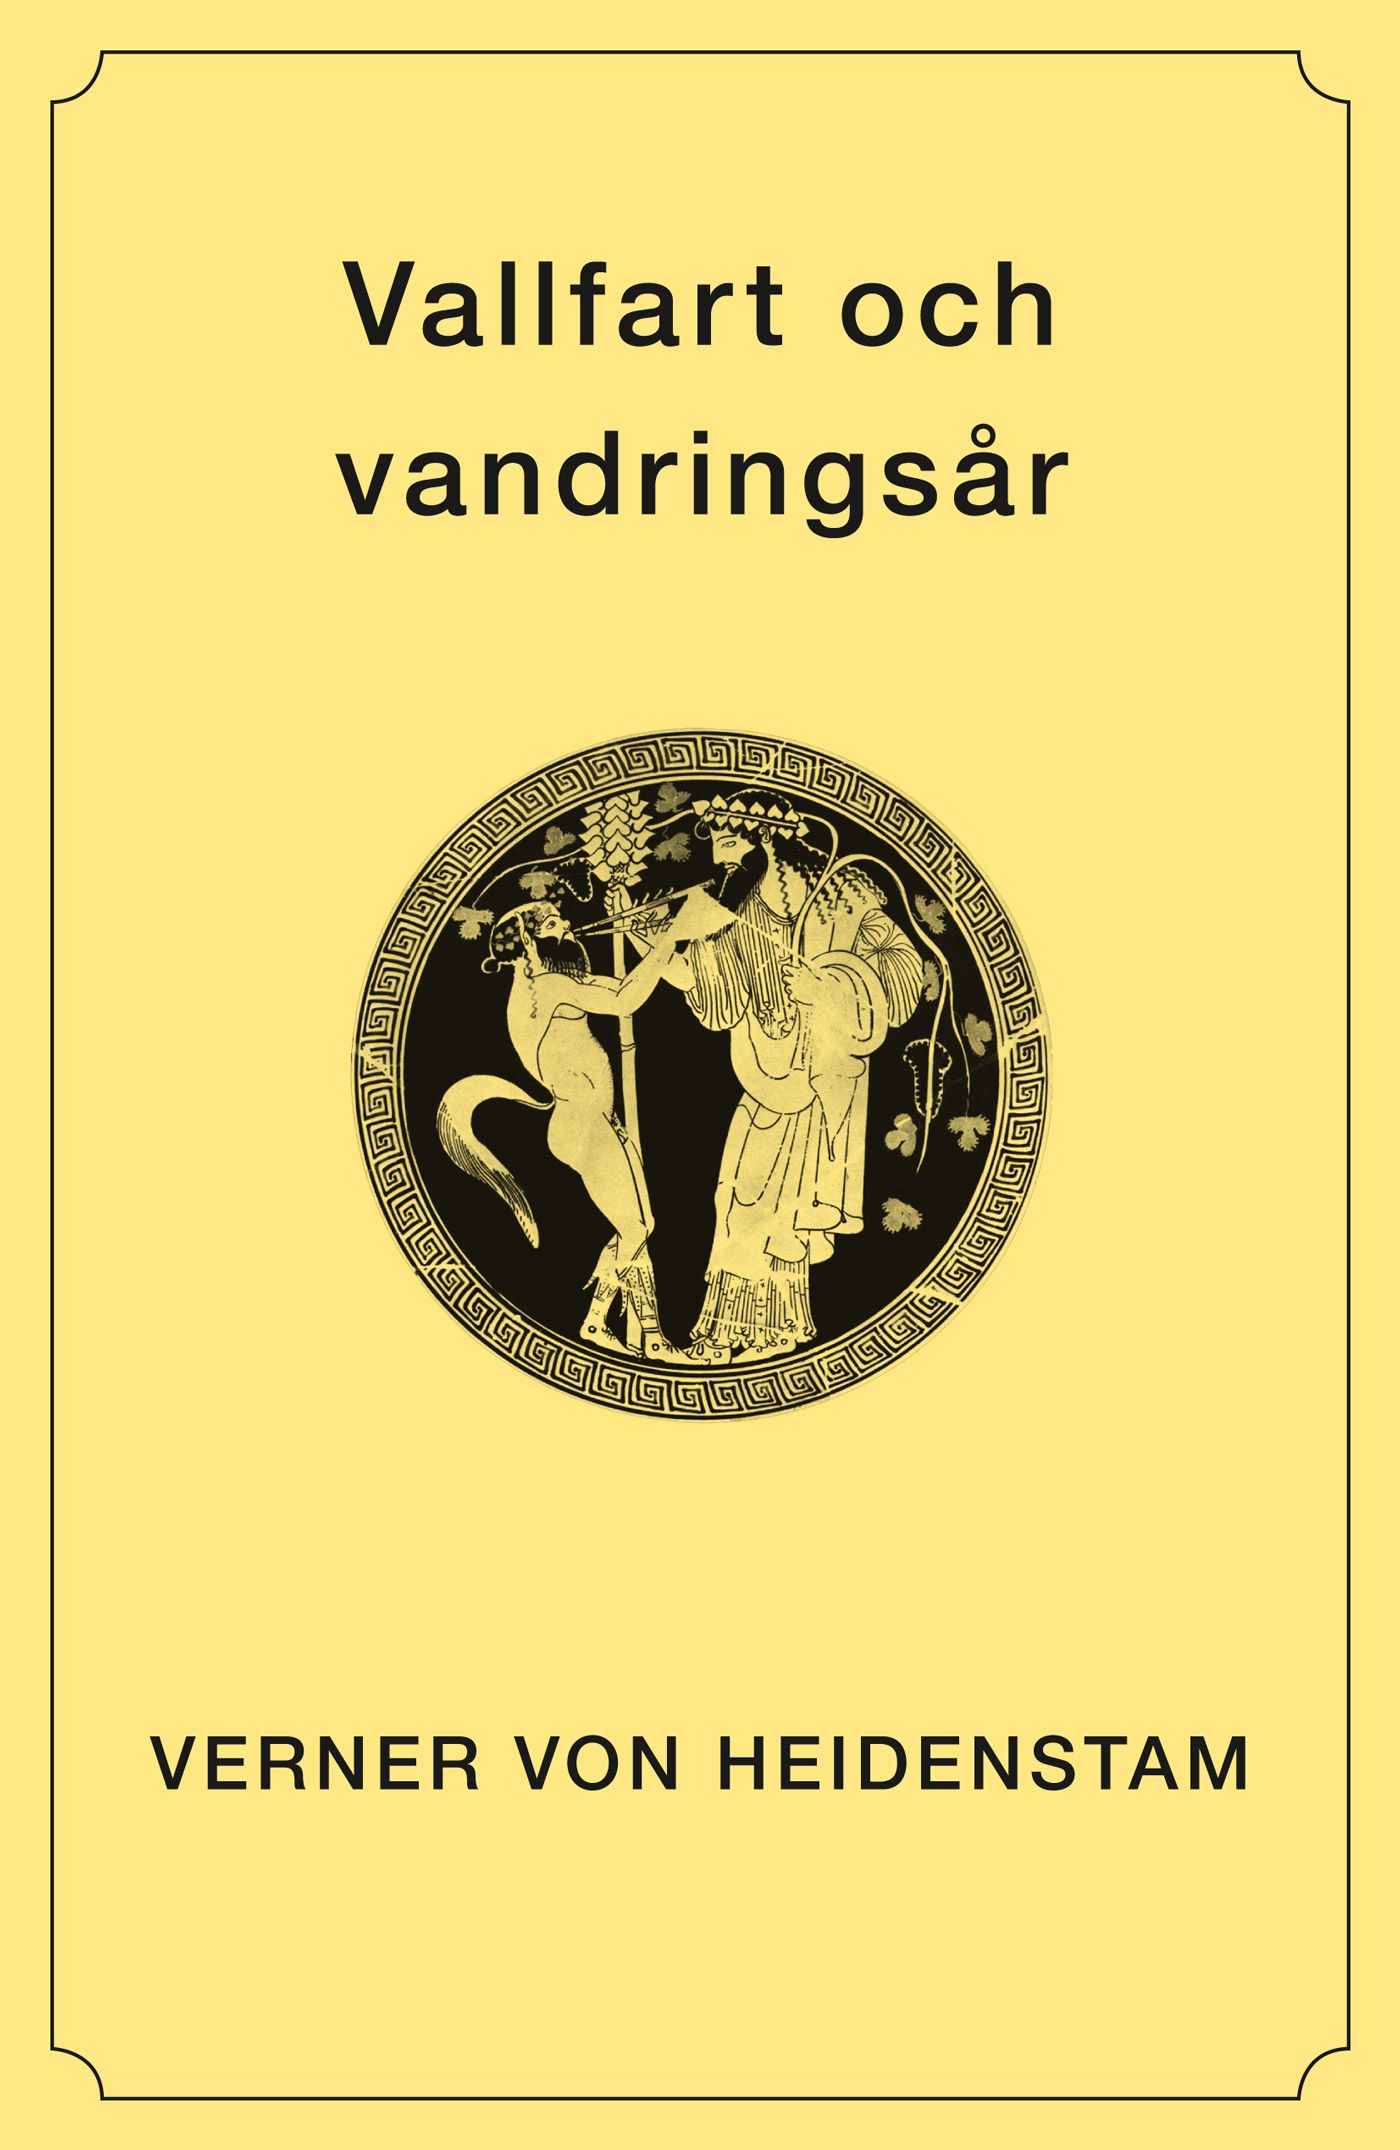 Vallfart och vandringsår, e-bok av Verner von Heidenstam